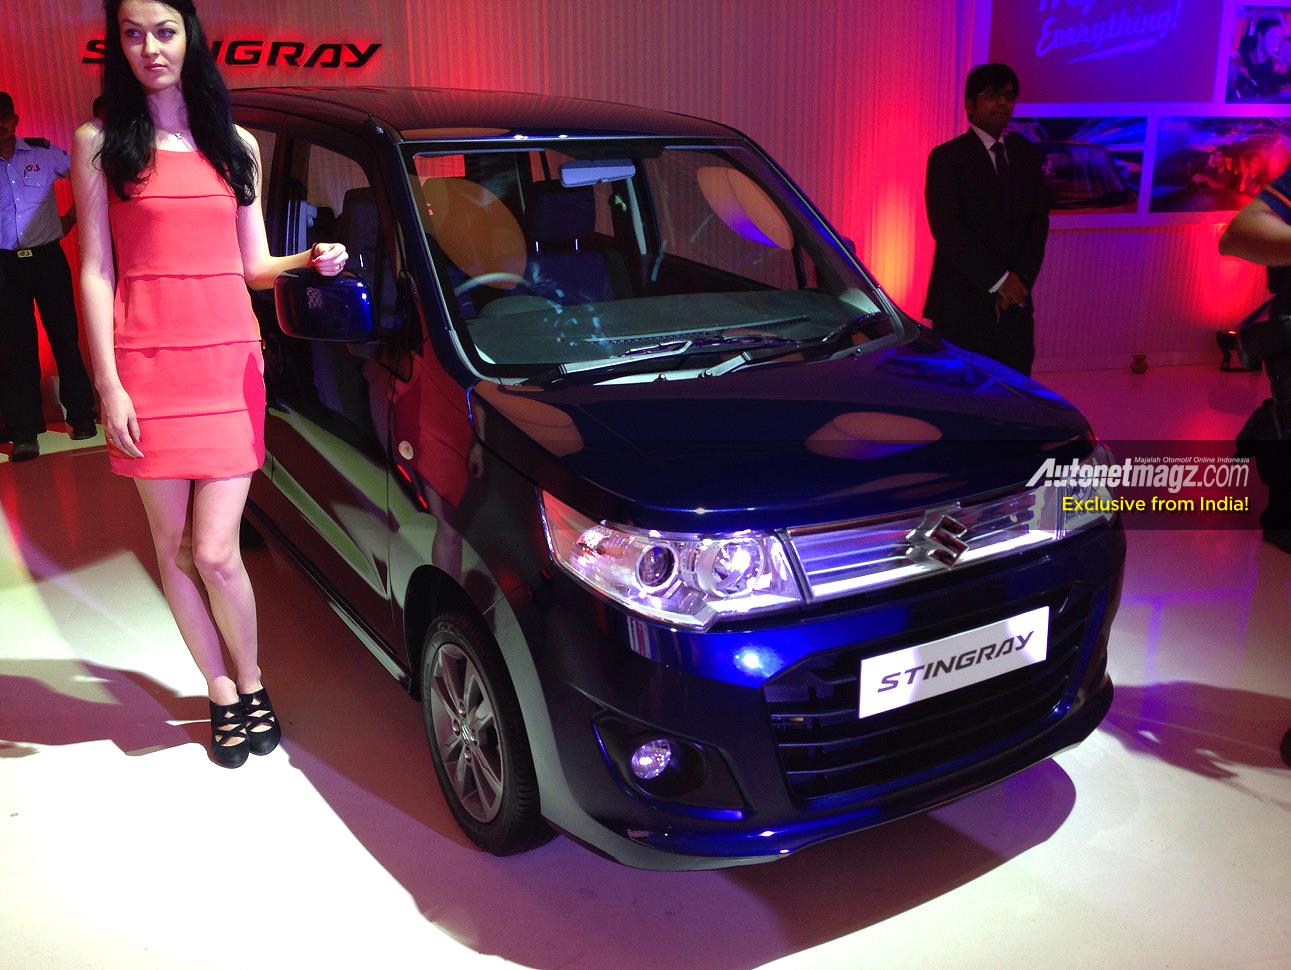 International, Suzuki Stingray biru: Suzuki Stingray India Ternyata Sama Dengan Wagon R India